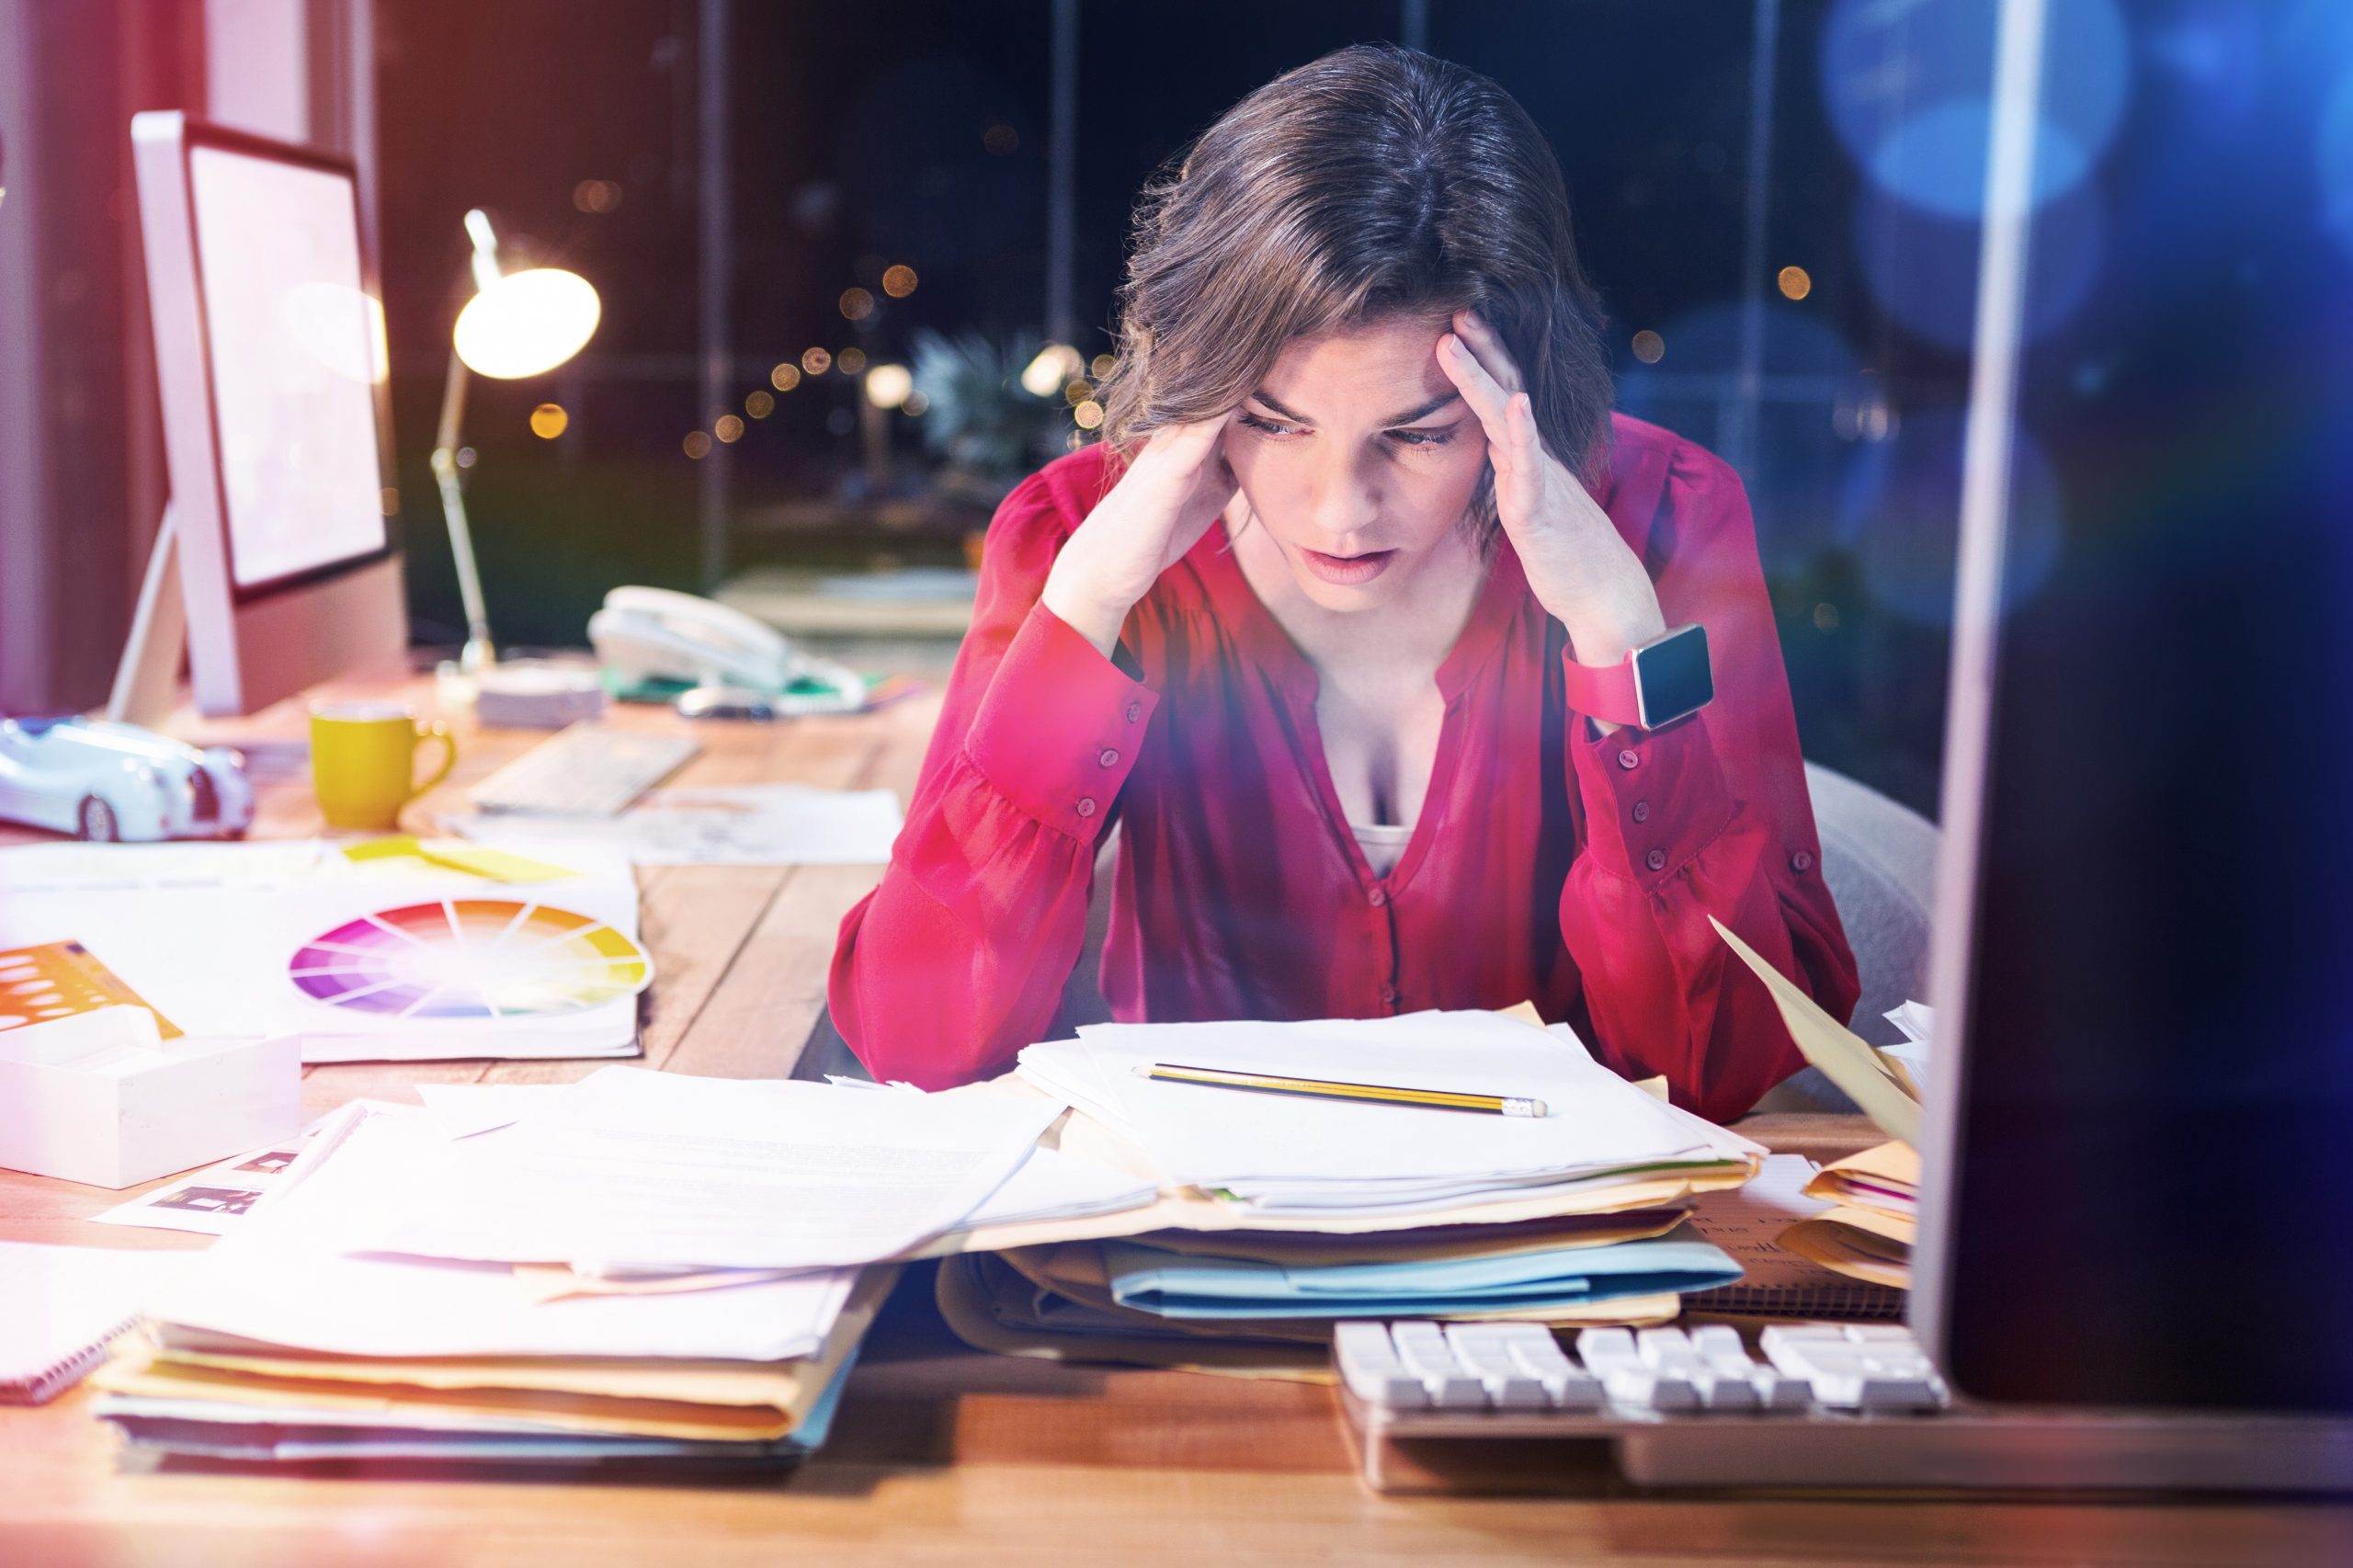 Wypalenie zawodowe - zmęczona, zestresowana kobieta trzymająca się za głowę siedząca przy biurku pełnym papierów